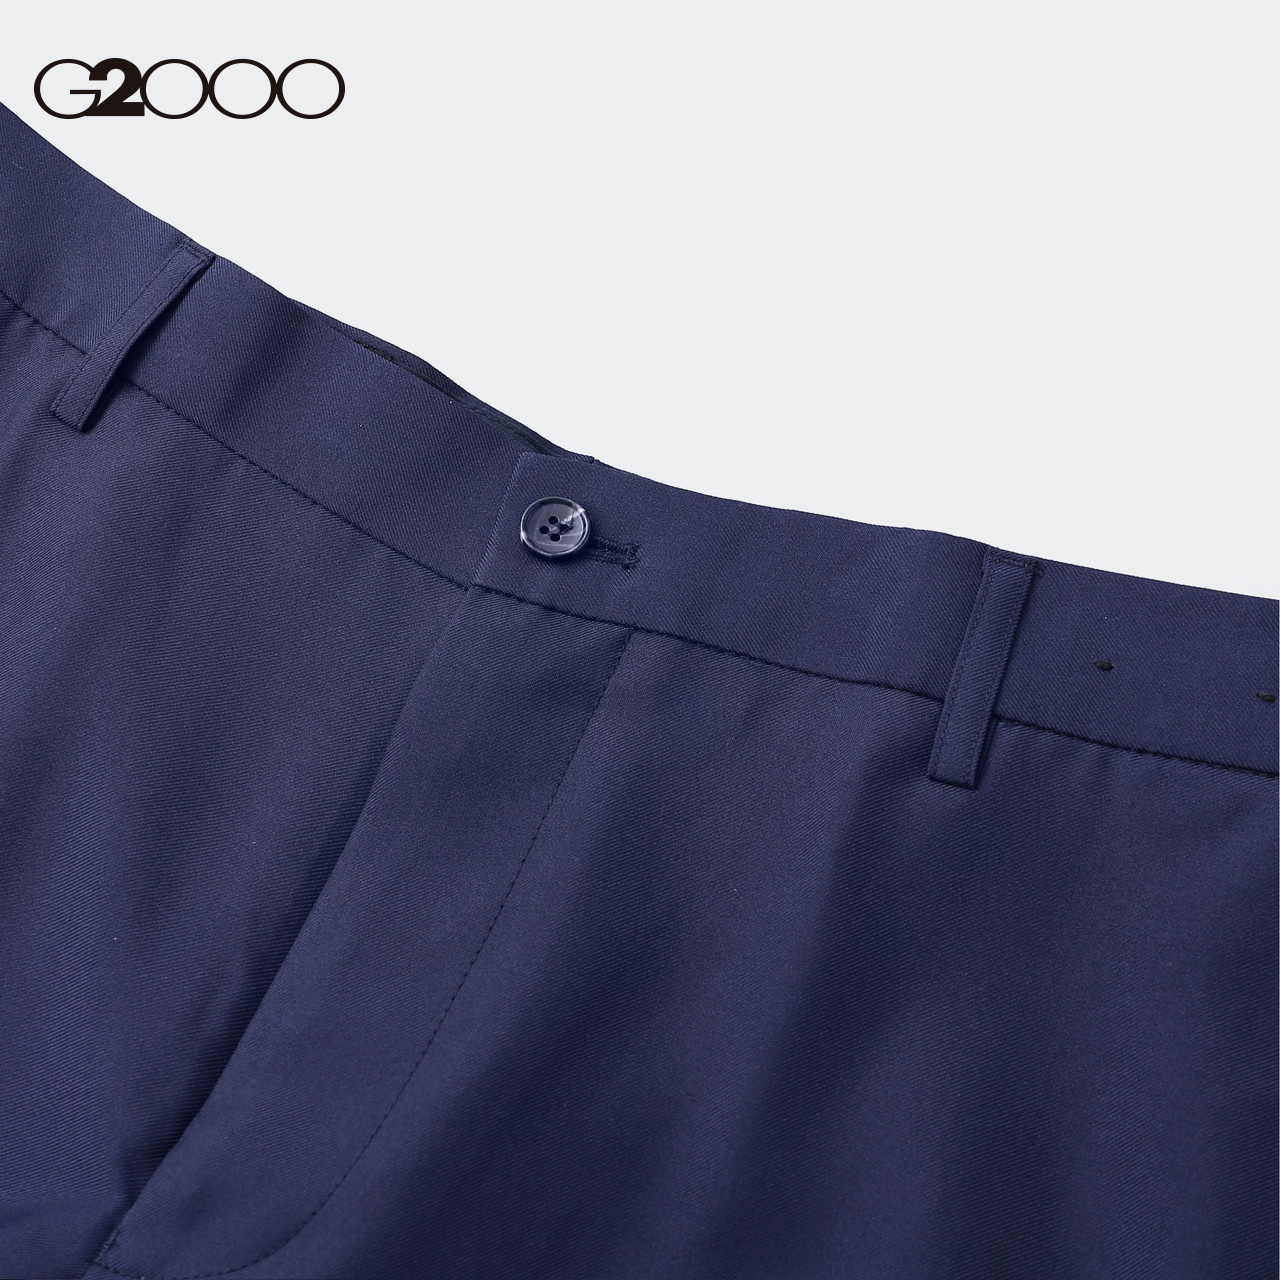 G2000 trung tâm mua sắm của nam giới với cổ điển thẳng tinh khiết quần kinh doanh xu hướng màu sắc và giải trí người đàn ông 00.150.392.